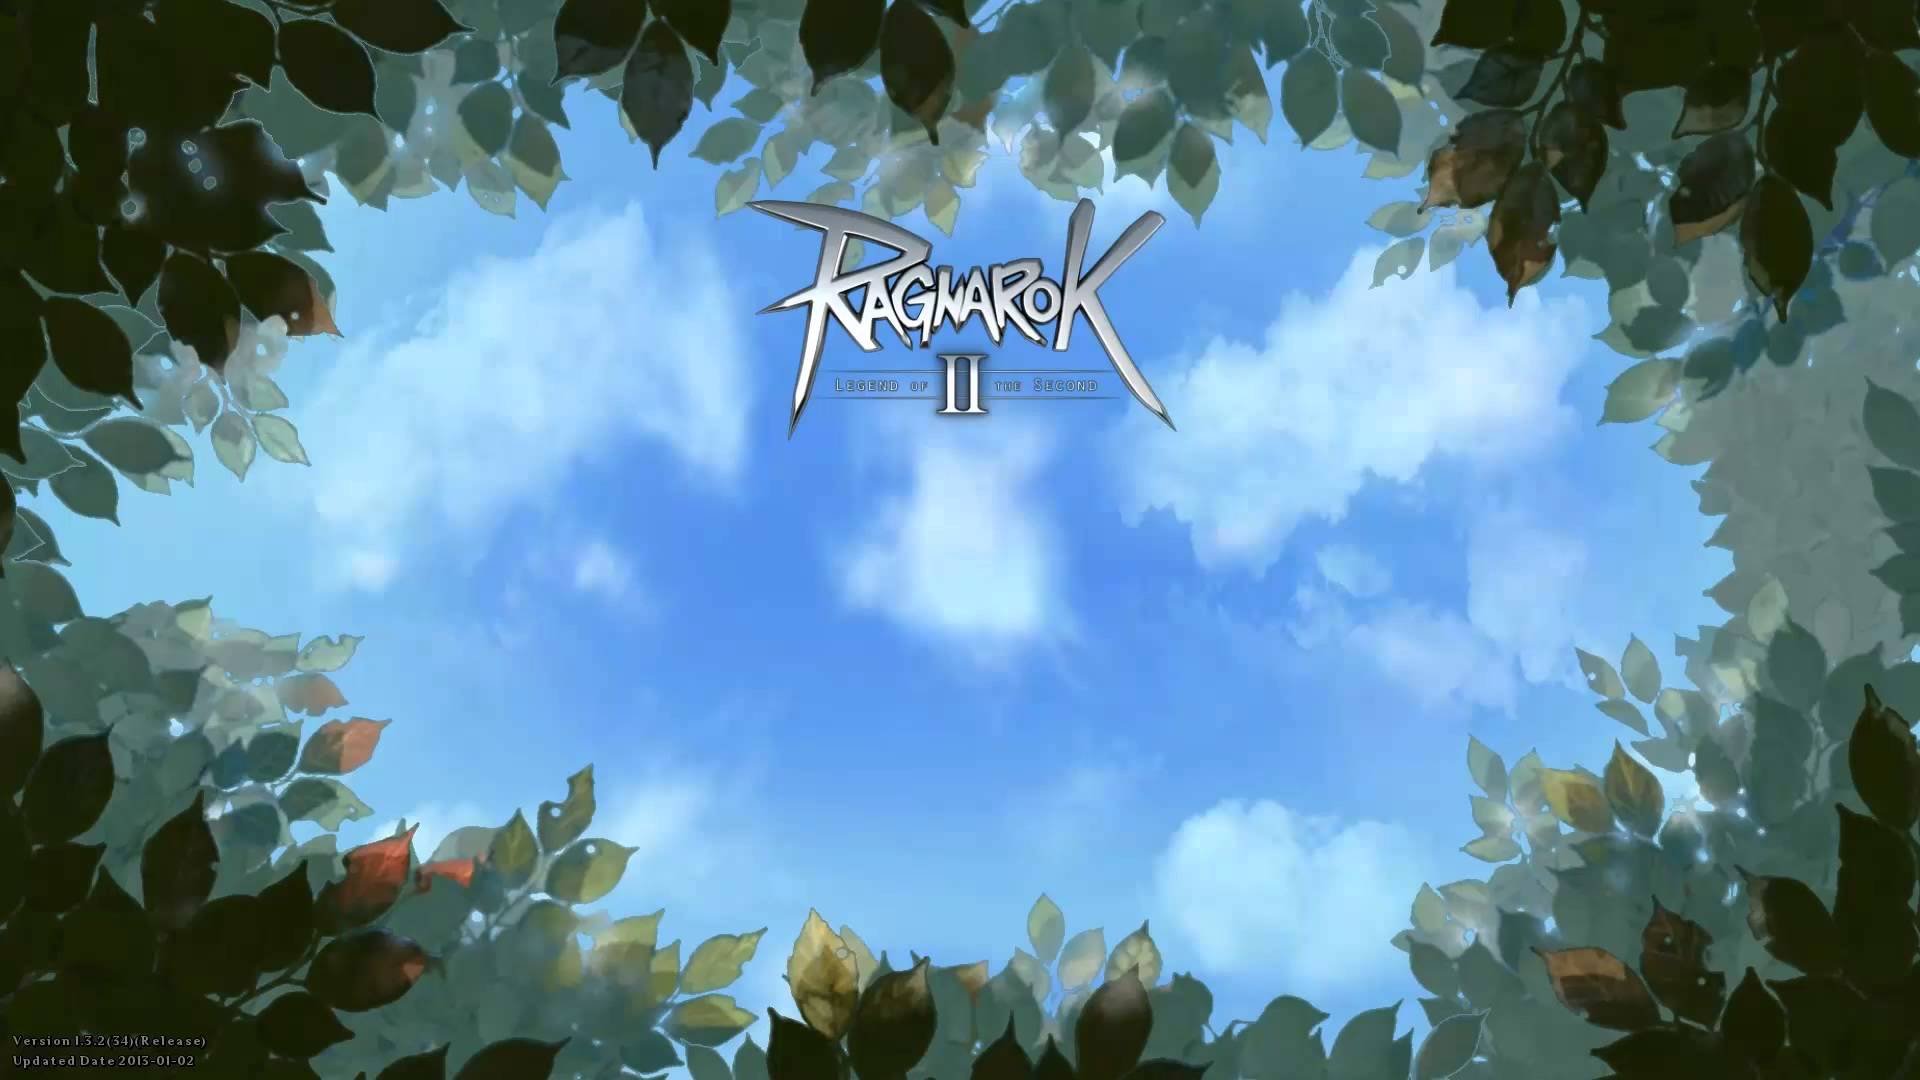 Ragnarok Background